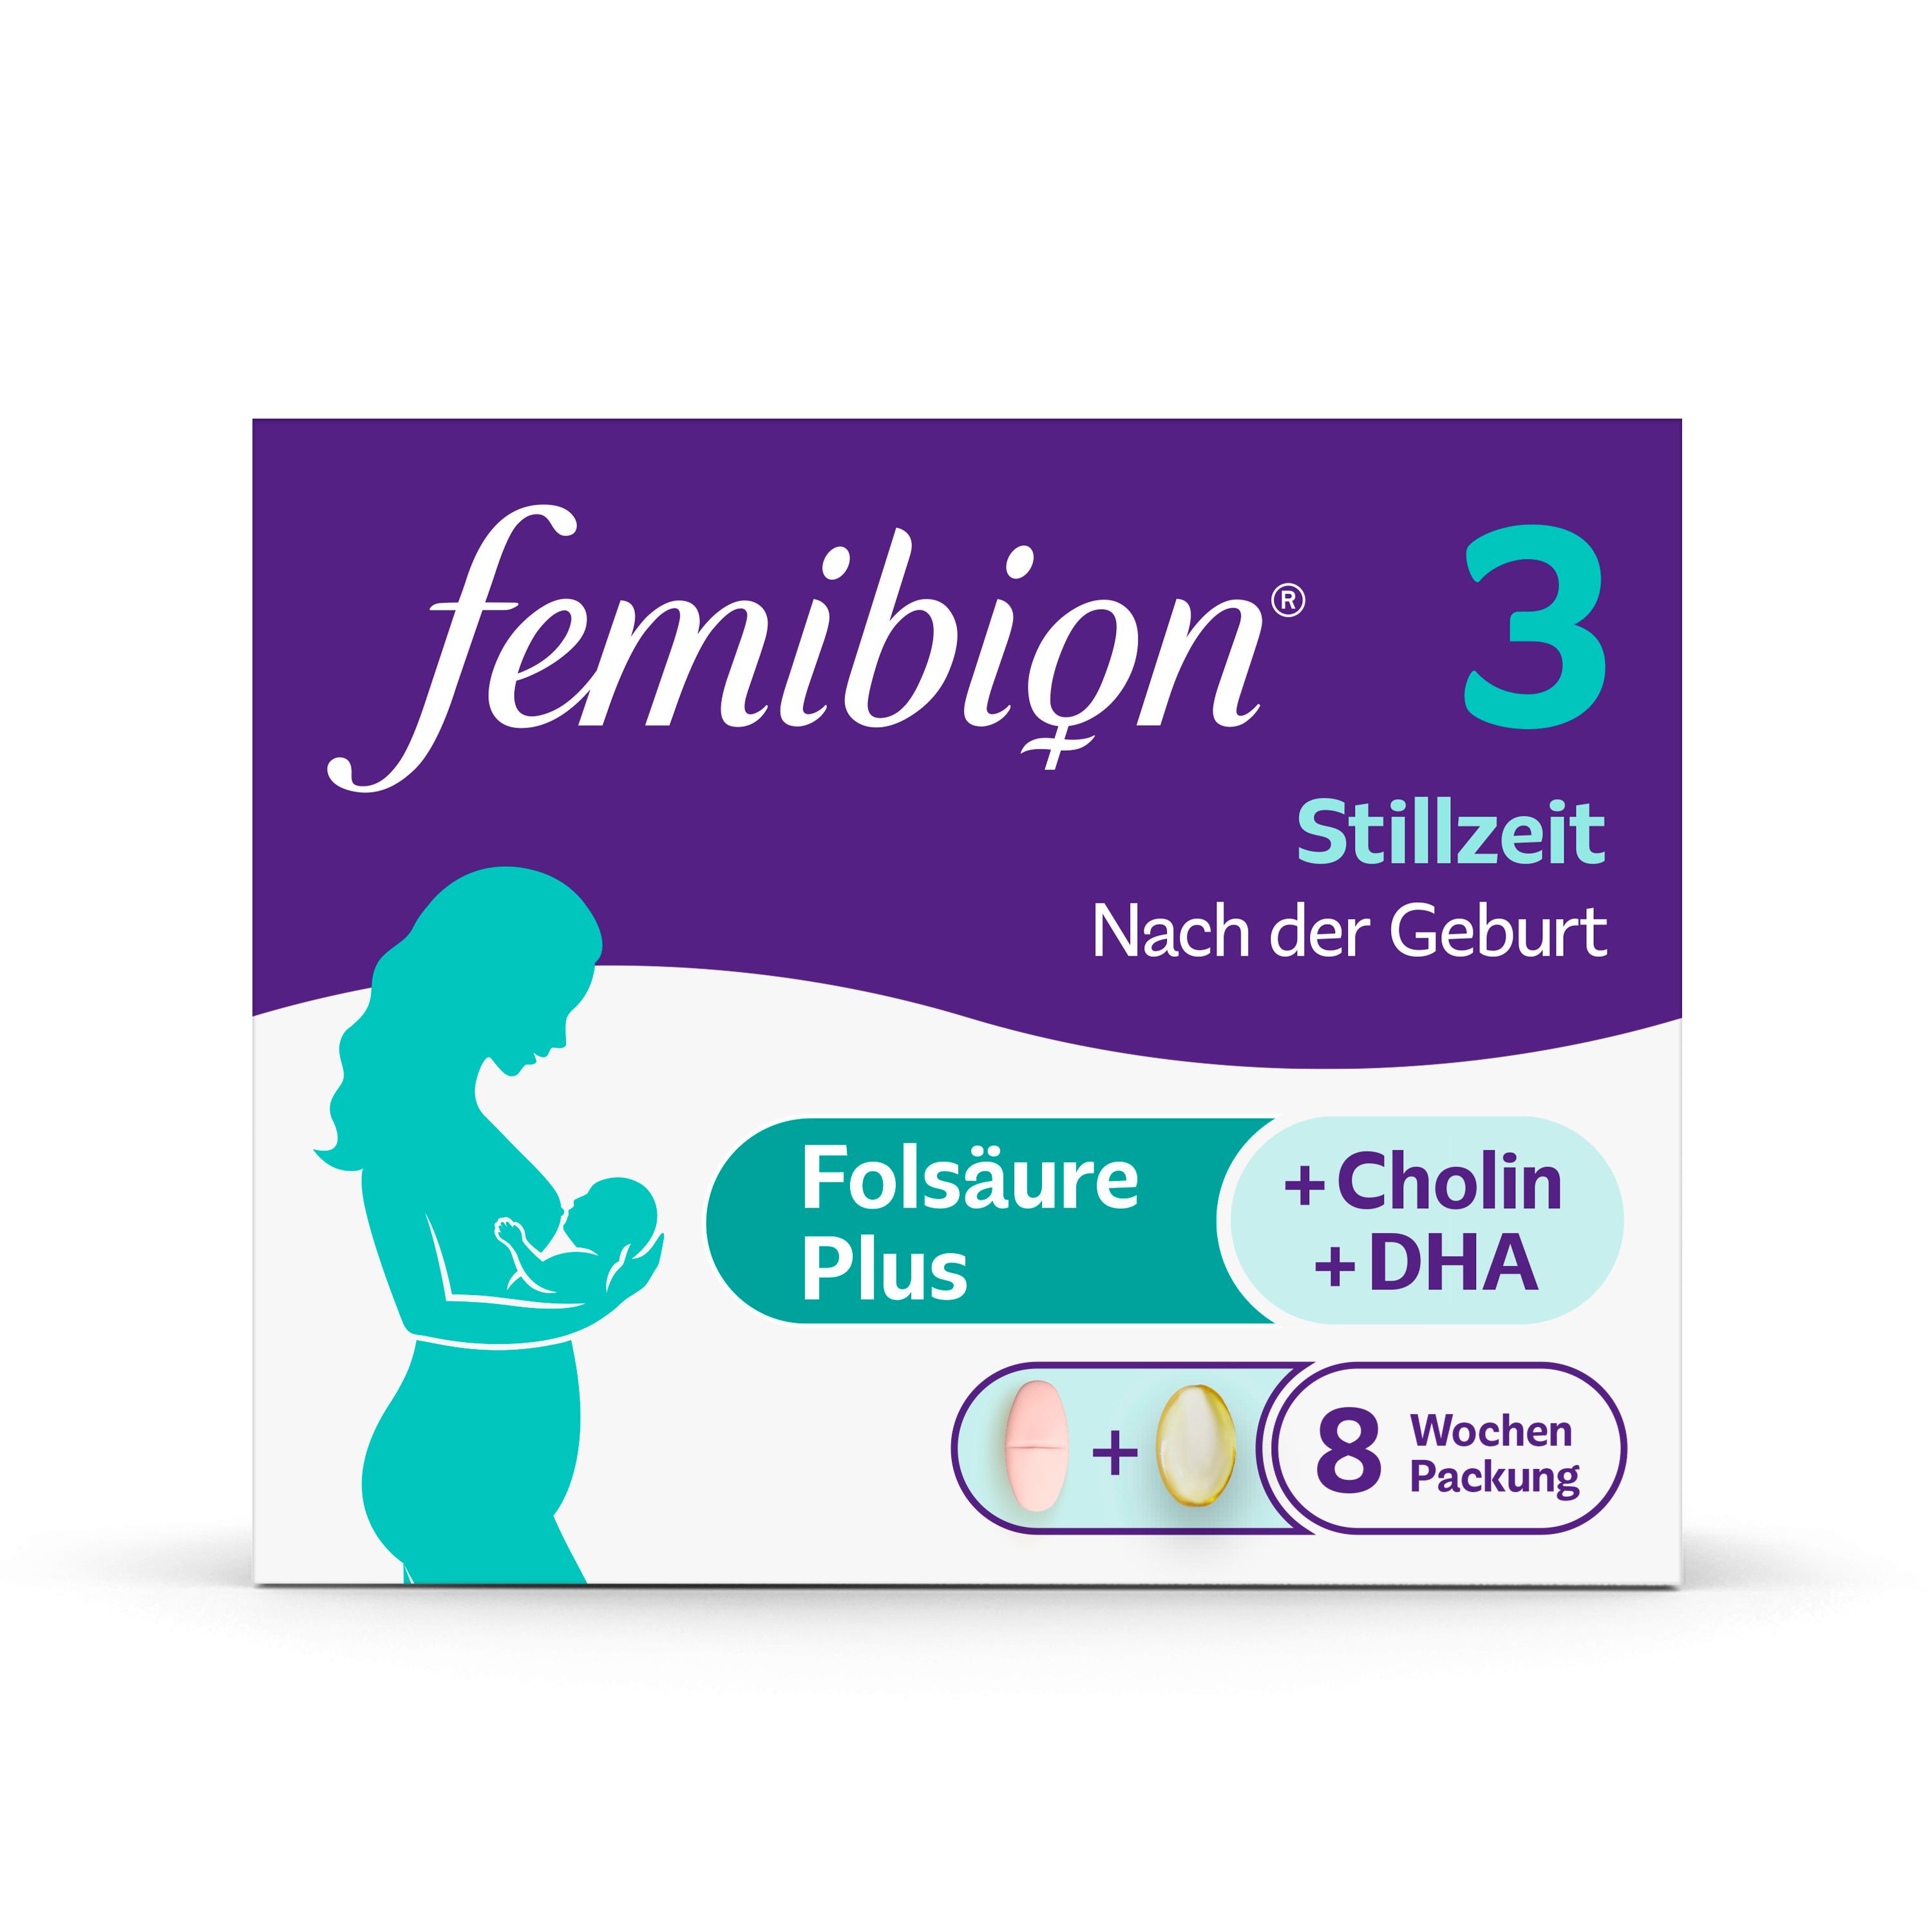 Femibion® 3 Stillzeit - Muttertagsaktion: Jetzt 10% sparen mit Code "Fem10"